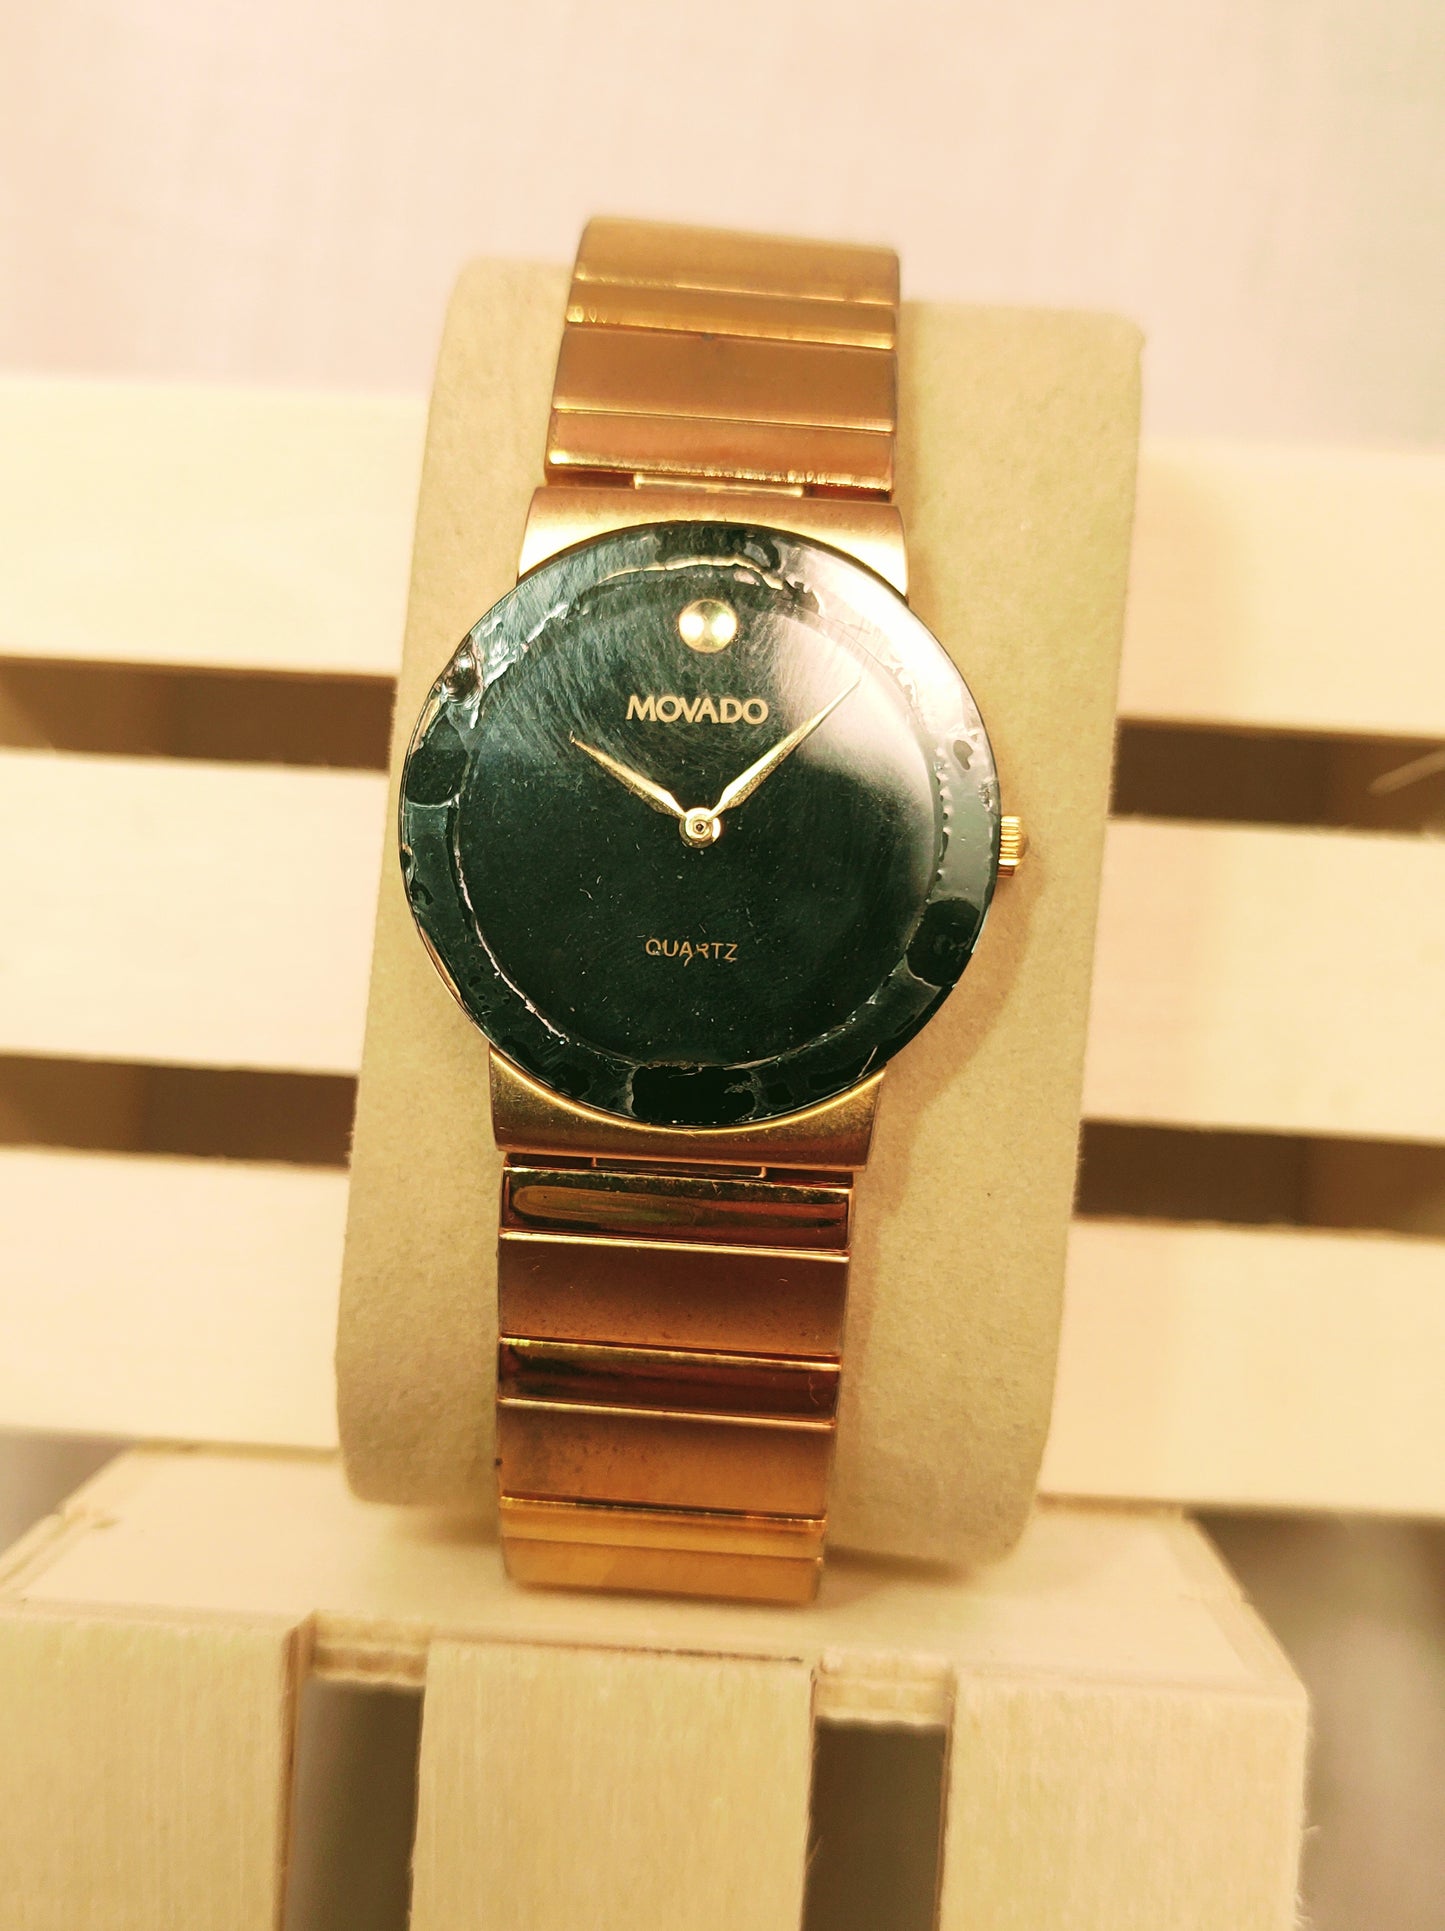 Movado Gold tone Quartz watch